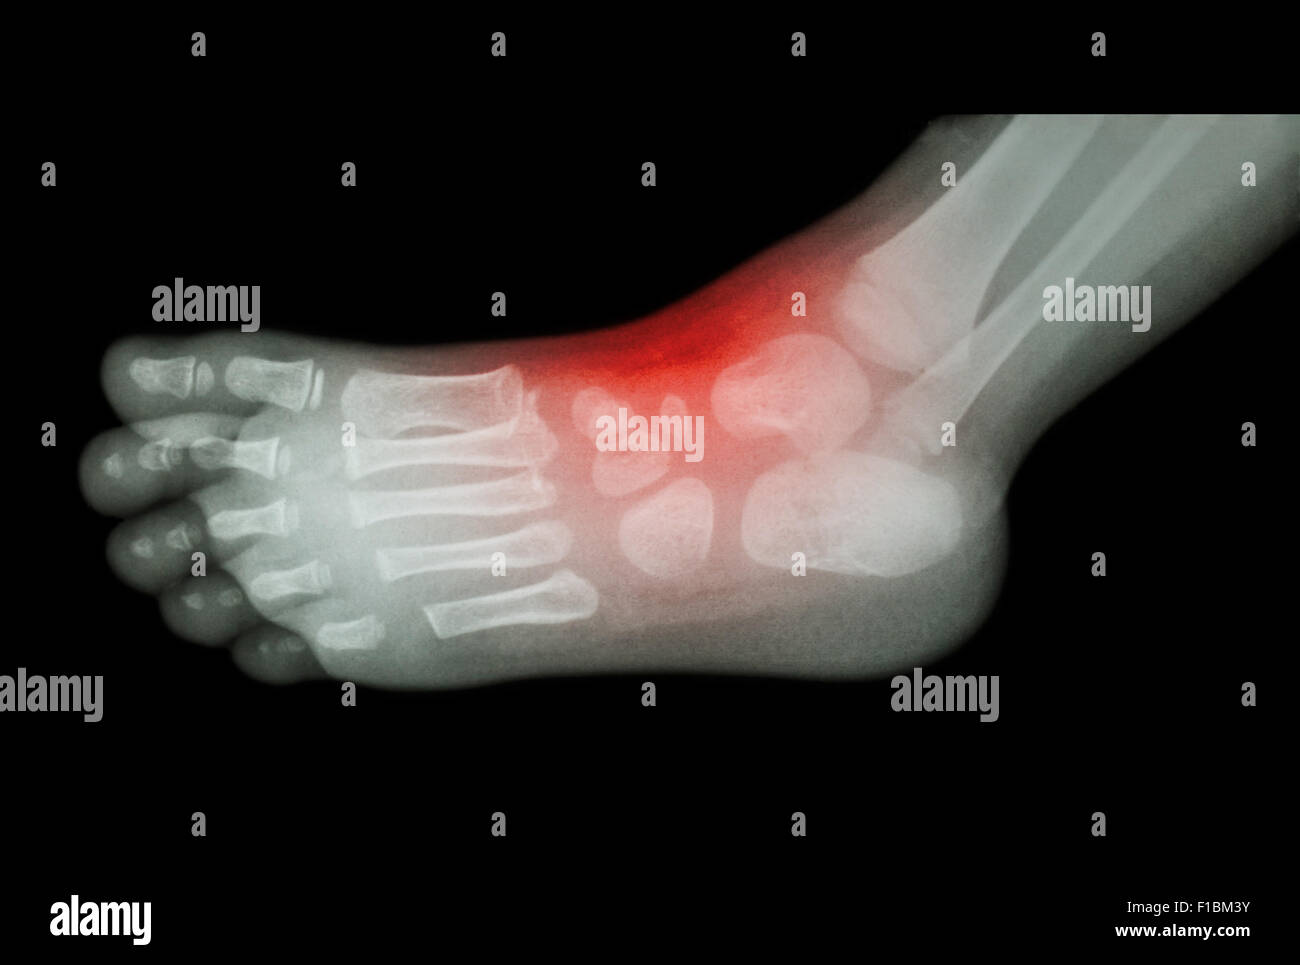 Artrite e lesioni alla caviglia : film x-ray del bambino 's piedi ( vista laterale ) ( ) laterale Foto Stock